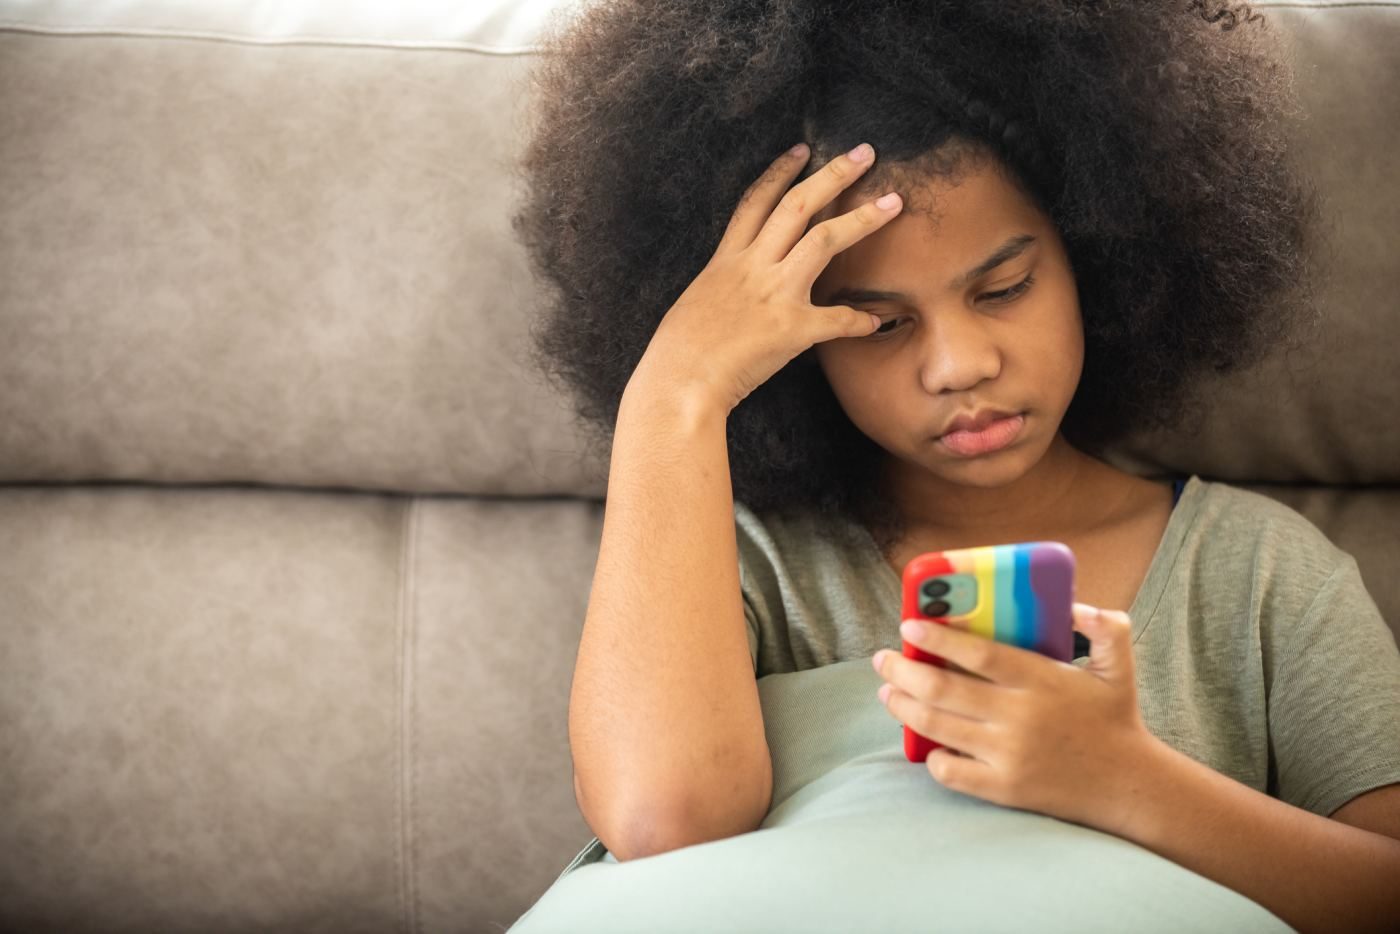 Harms of Social Media Use in Children